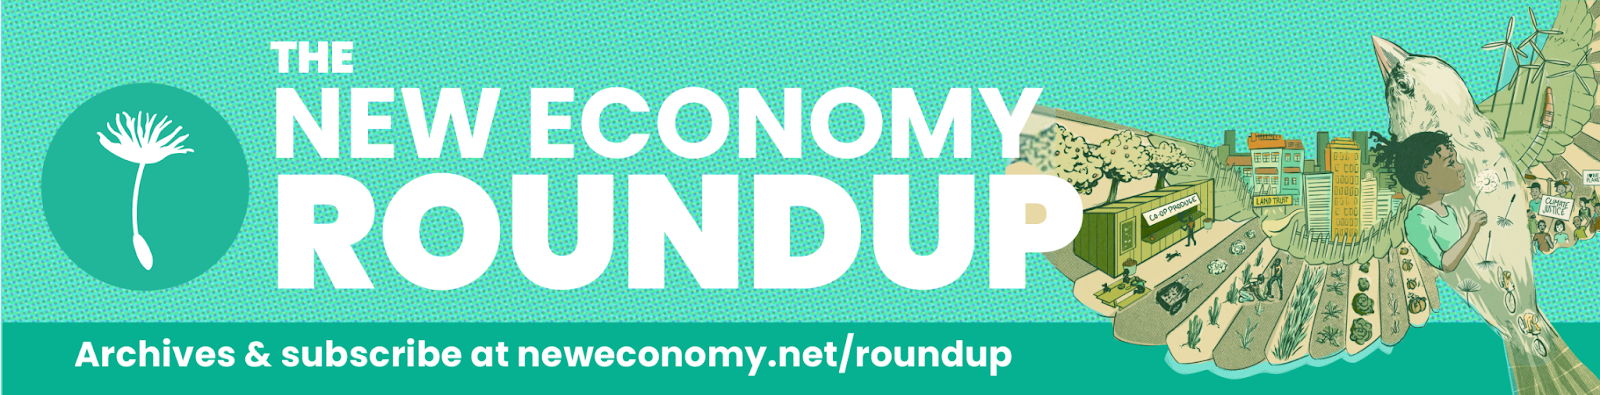 New Economy Roundup Banner